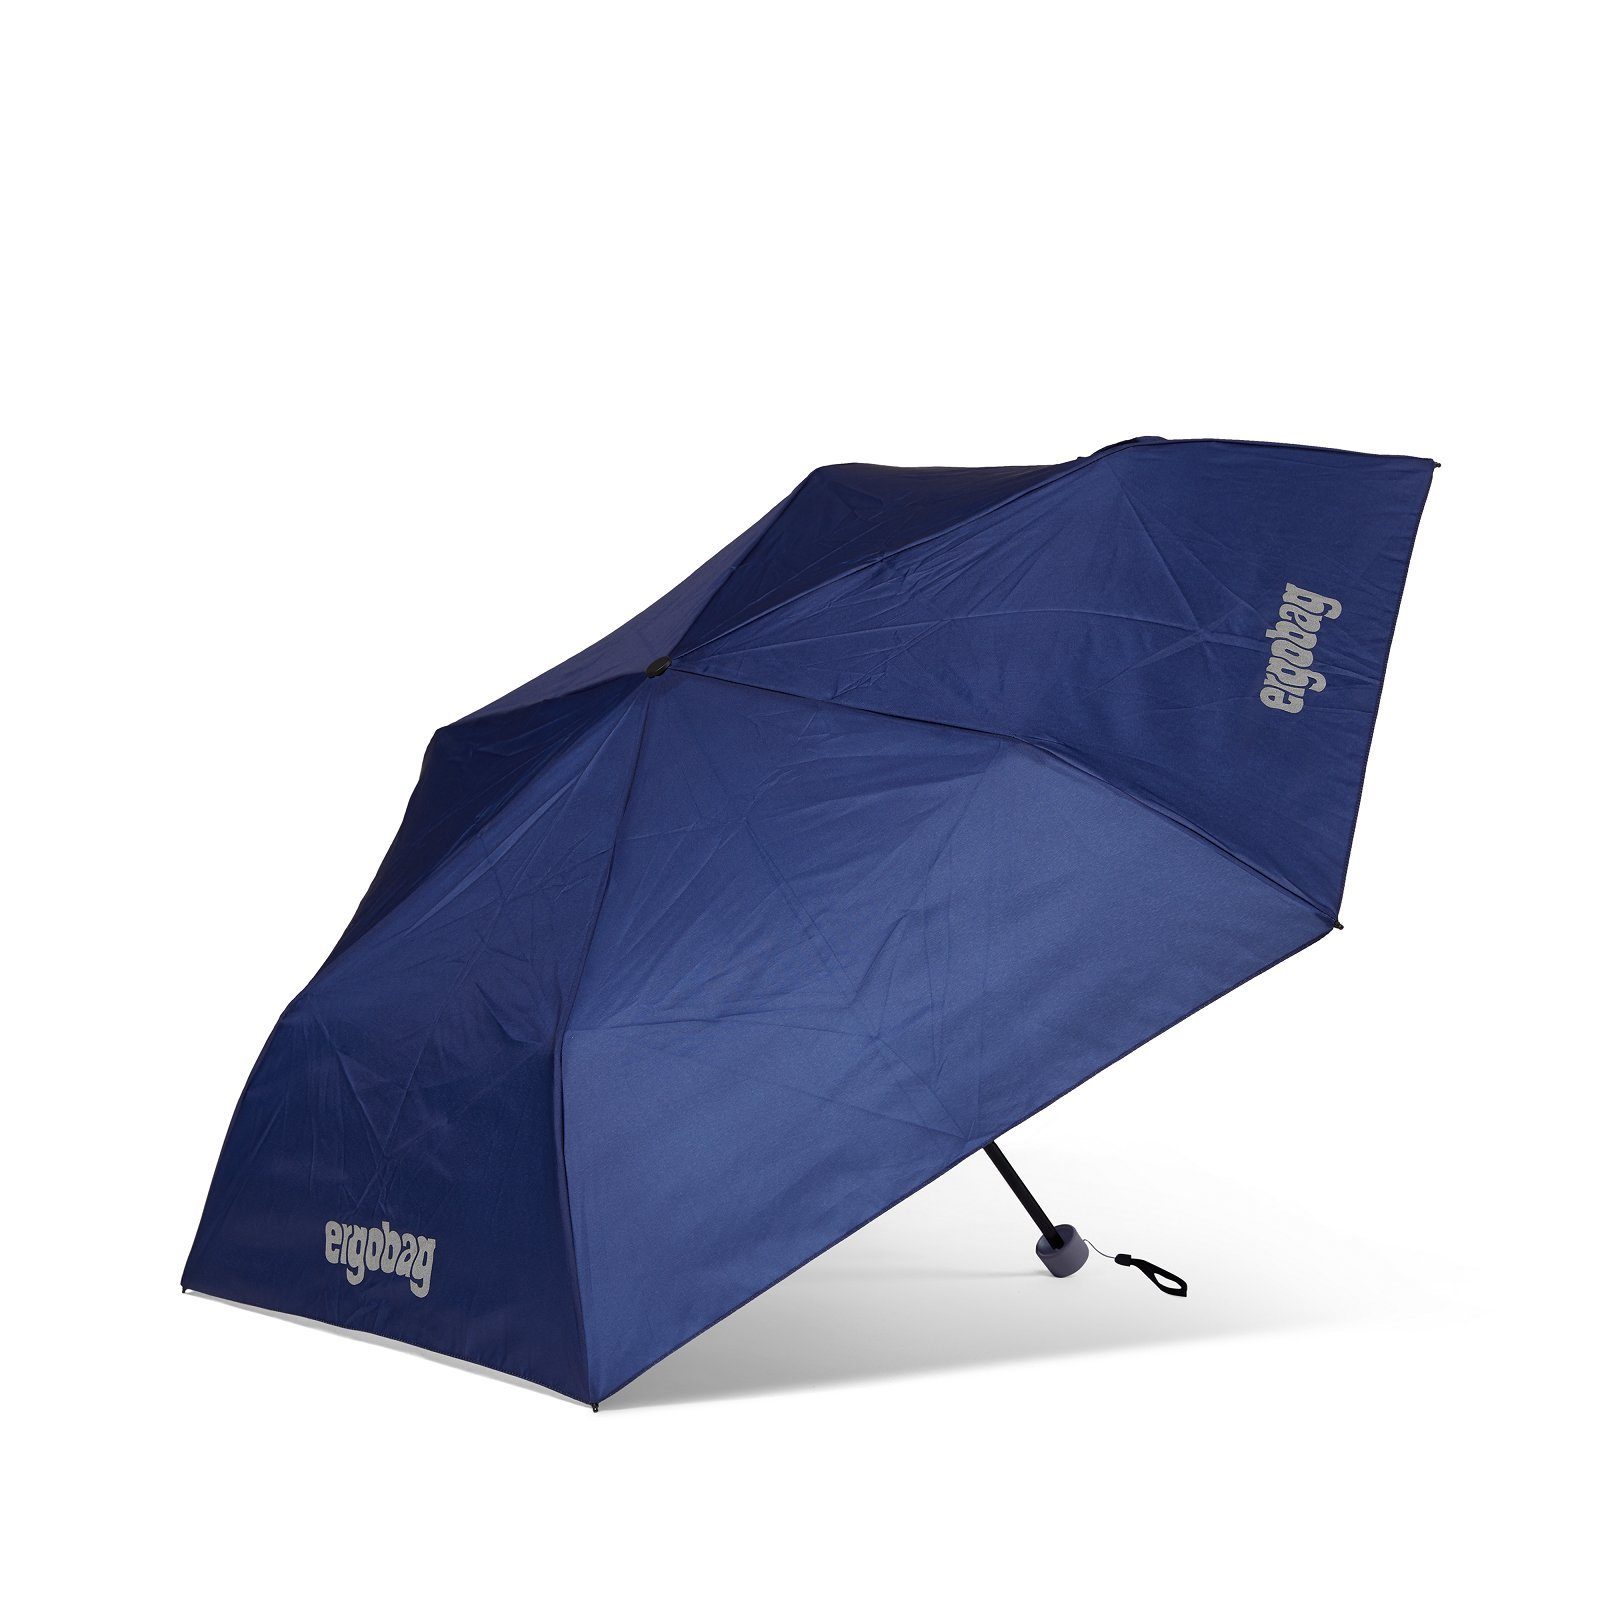 BlaulichtBär Kinder-Regenschirm, ergobag Taschenregenschirm Refektierend